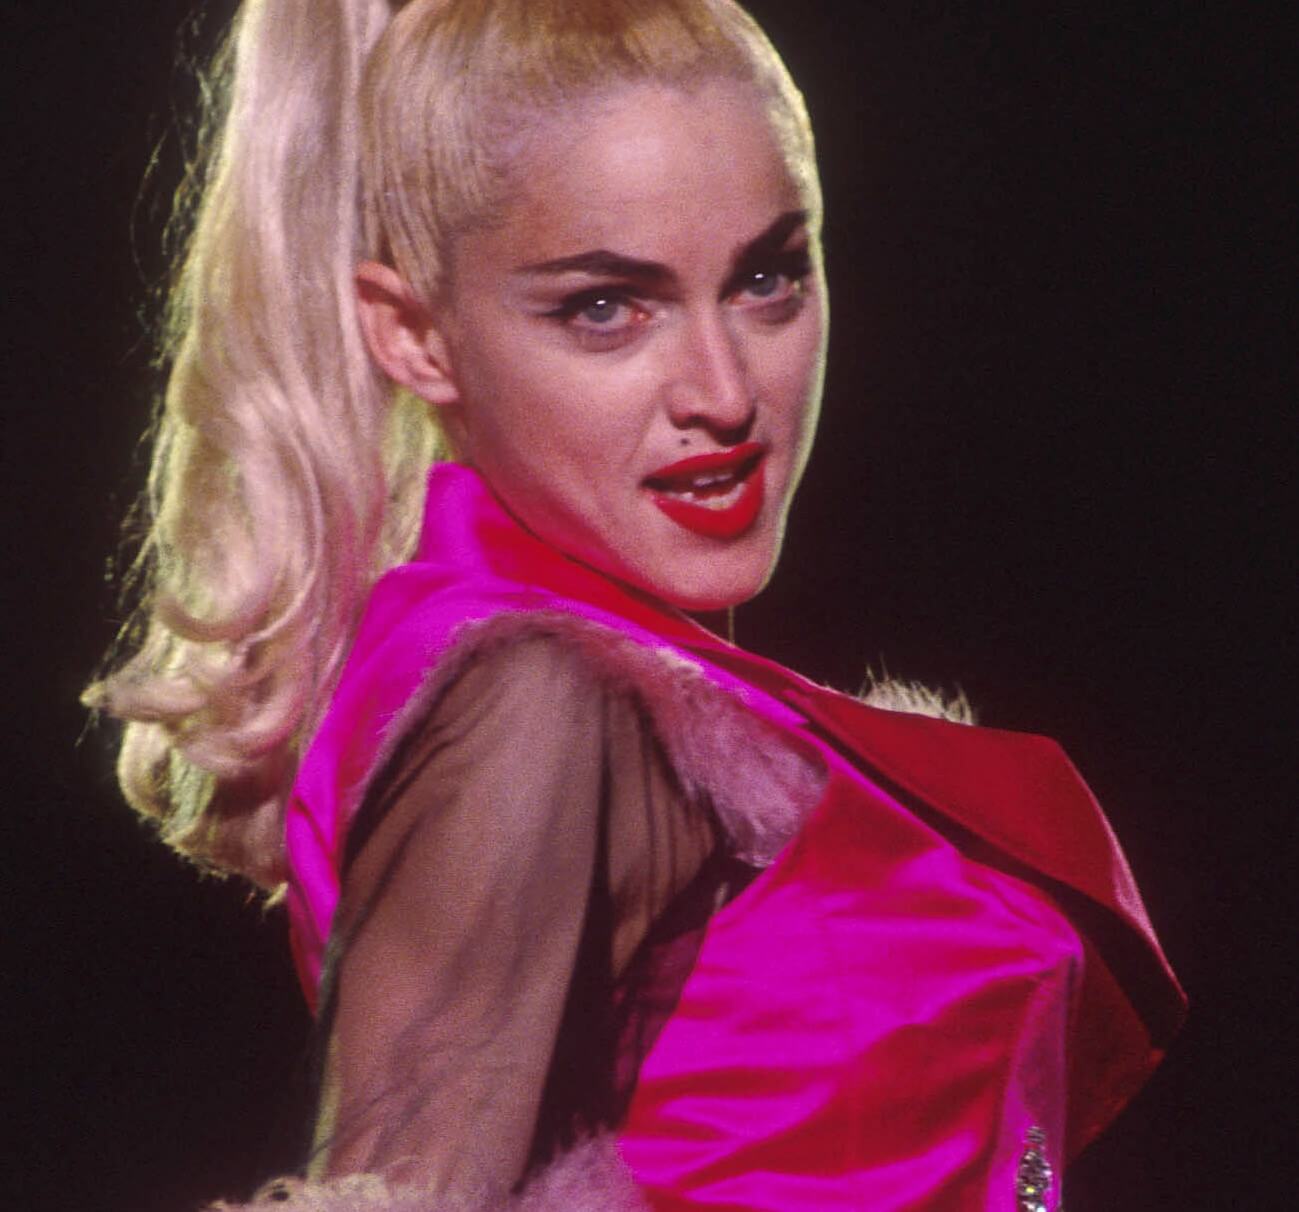 "Material Girl" singer Madonna wearing pink